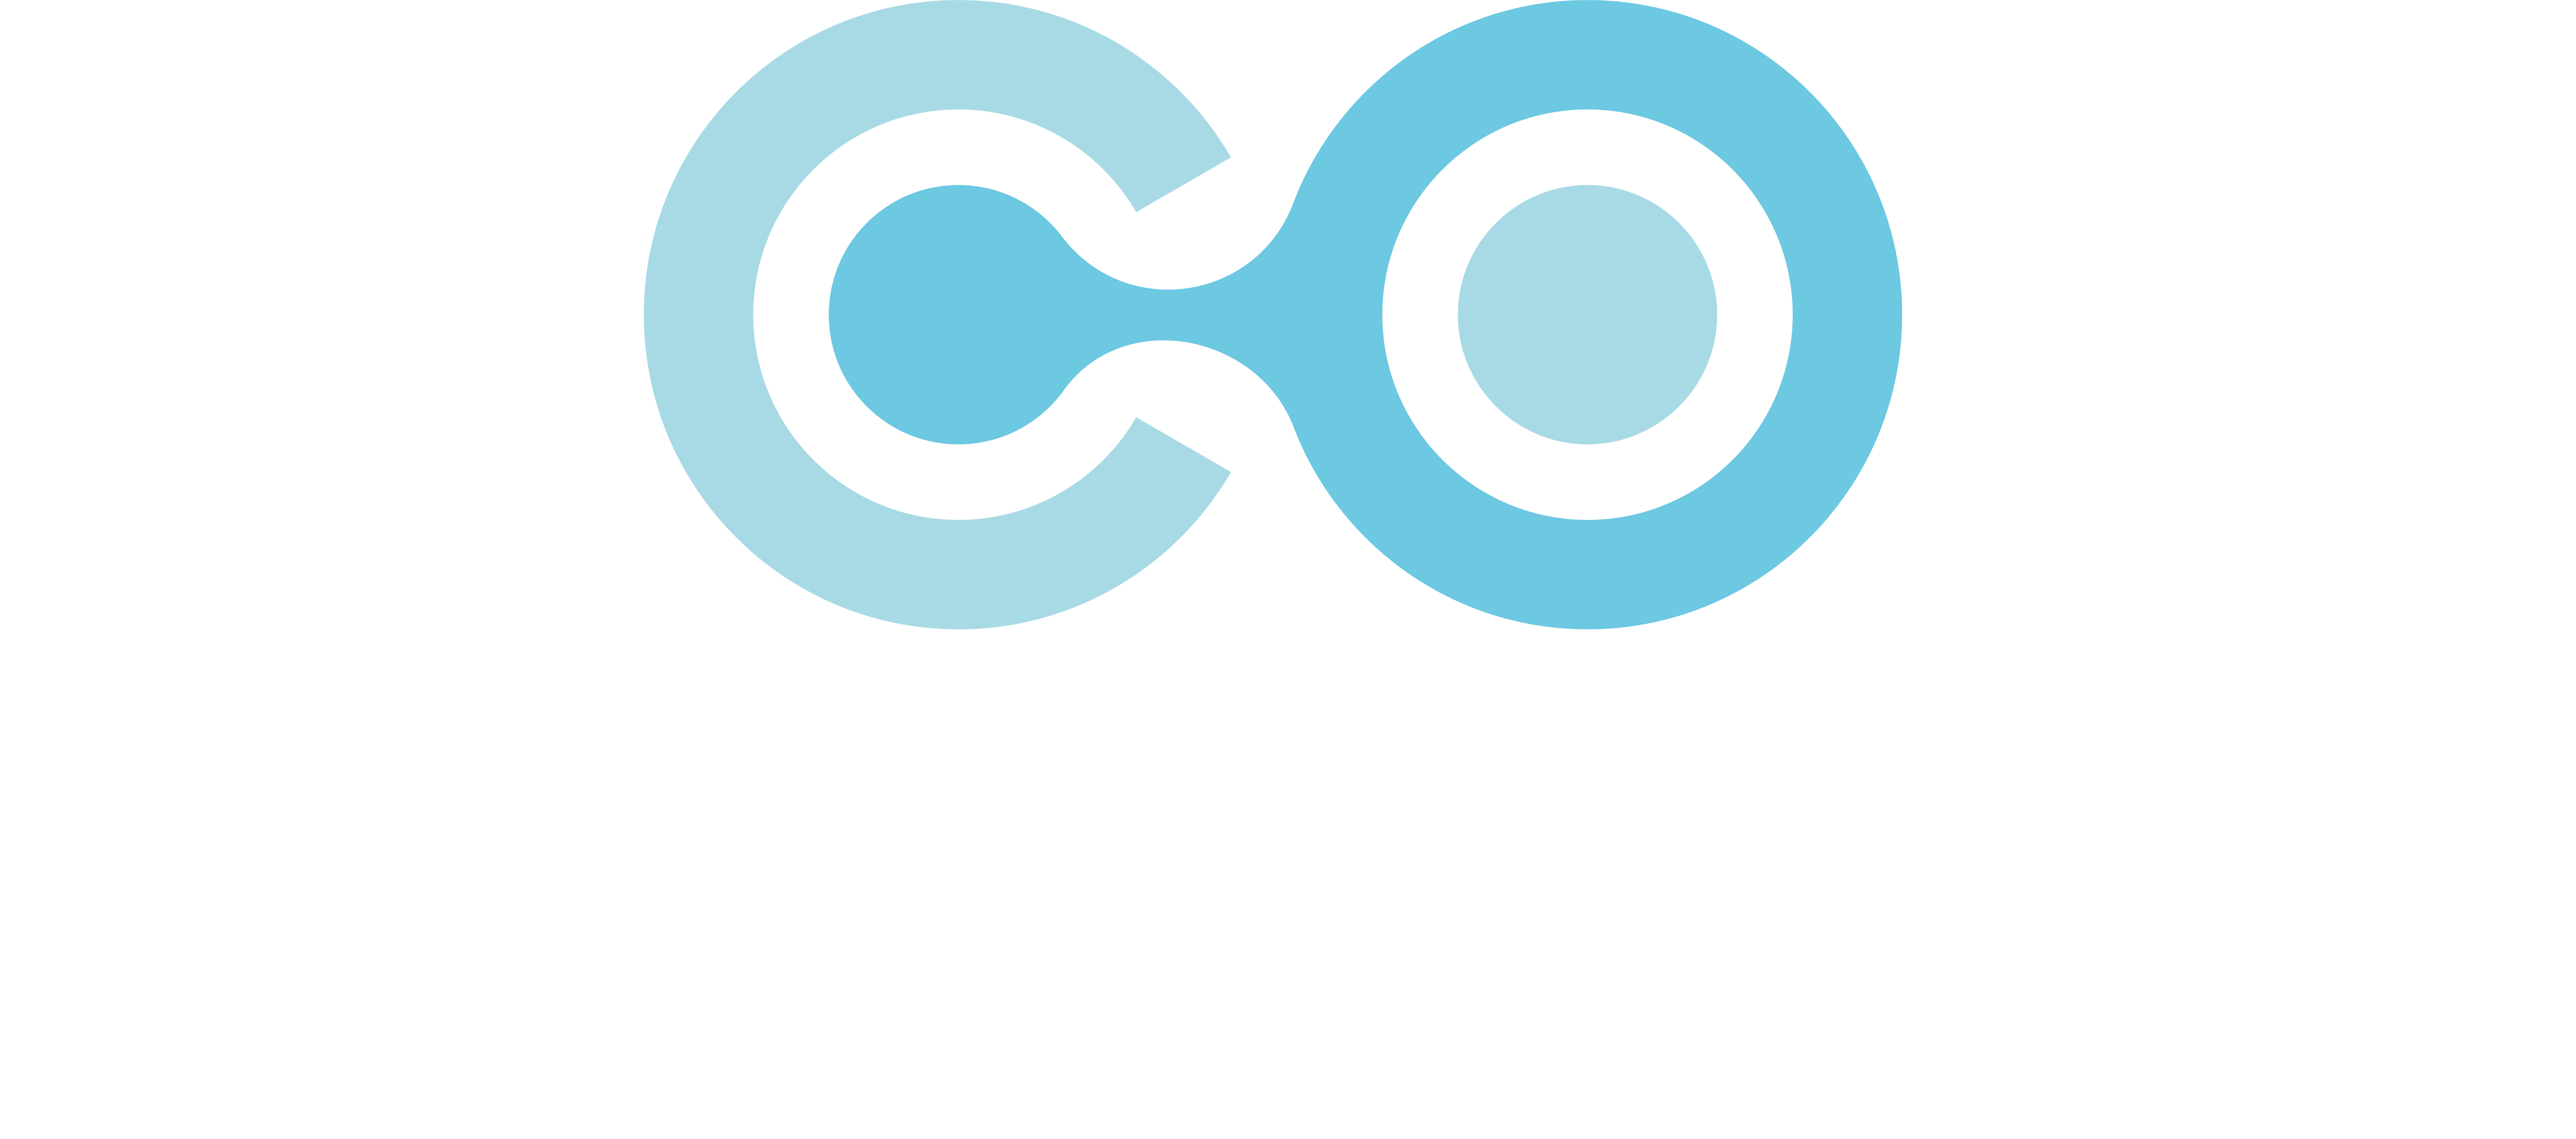 Coin Edex Pro